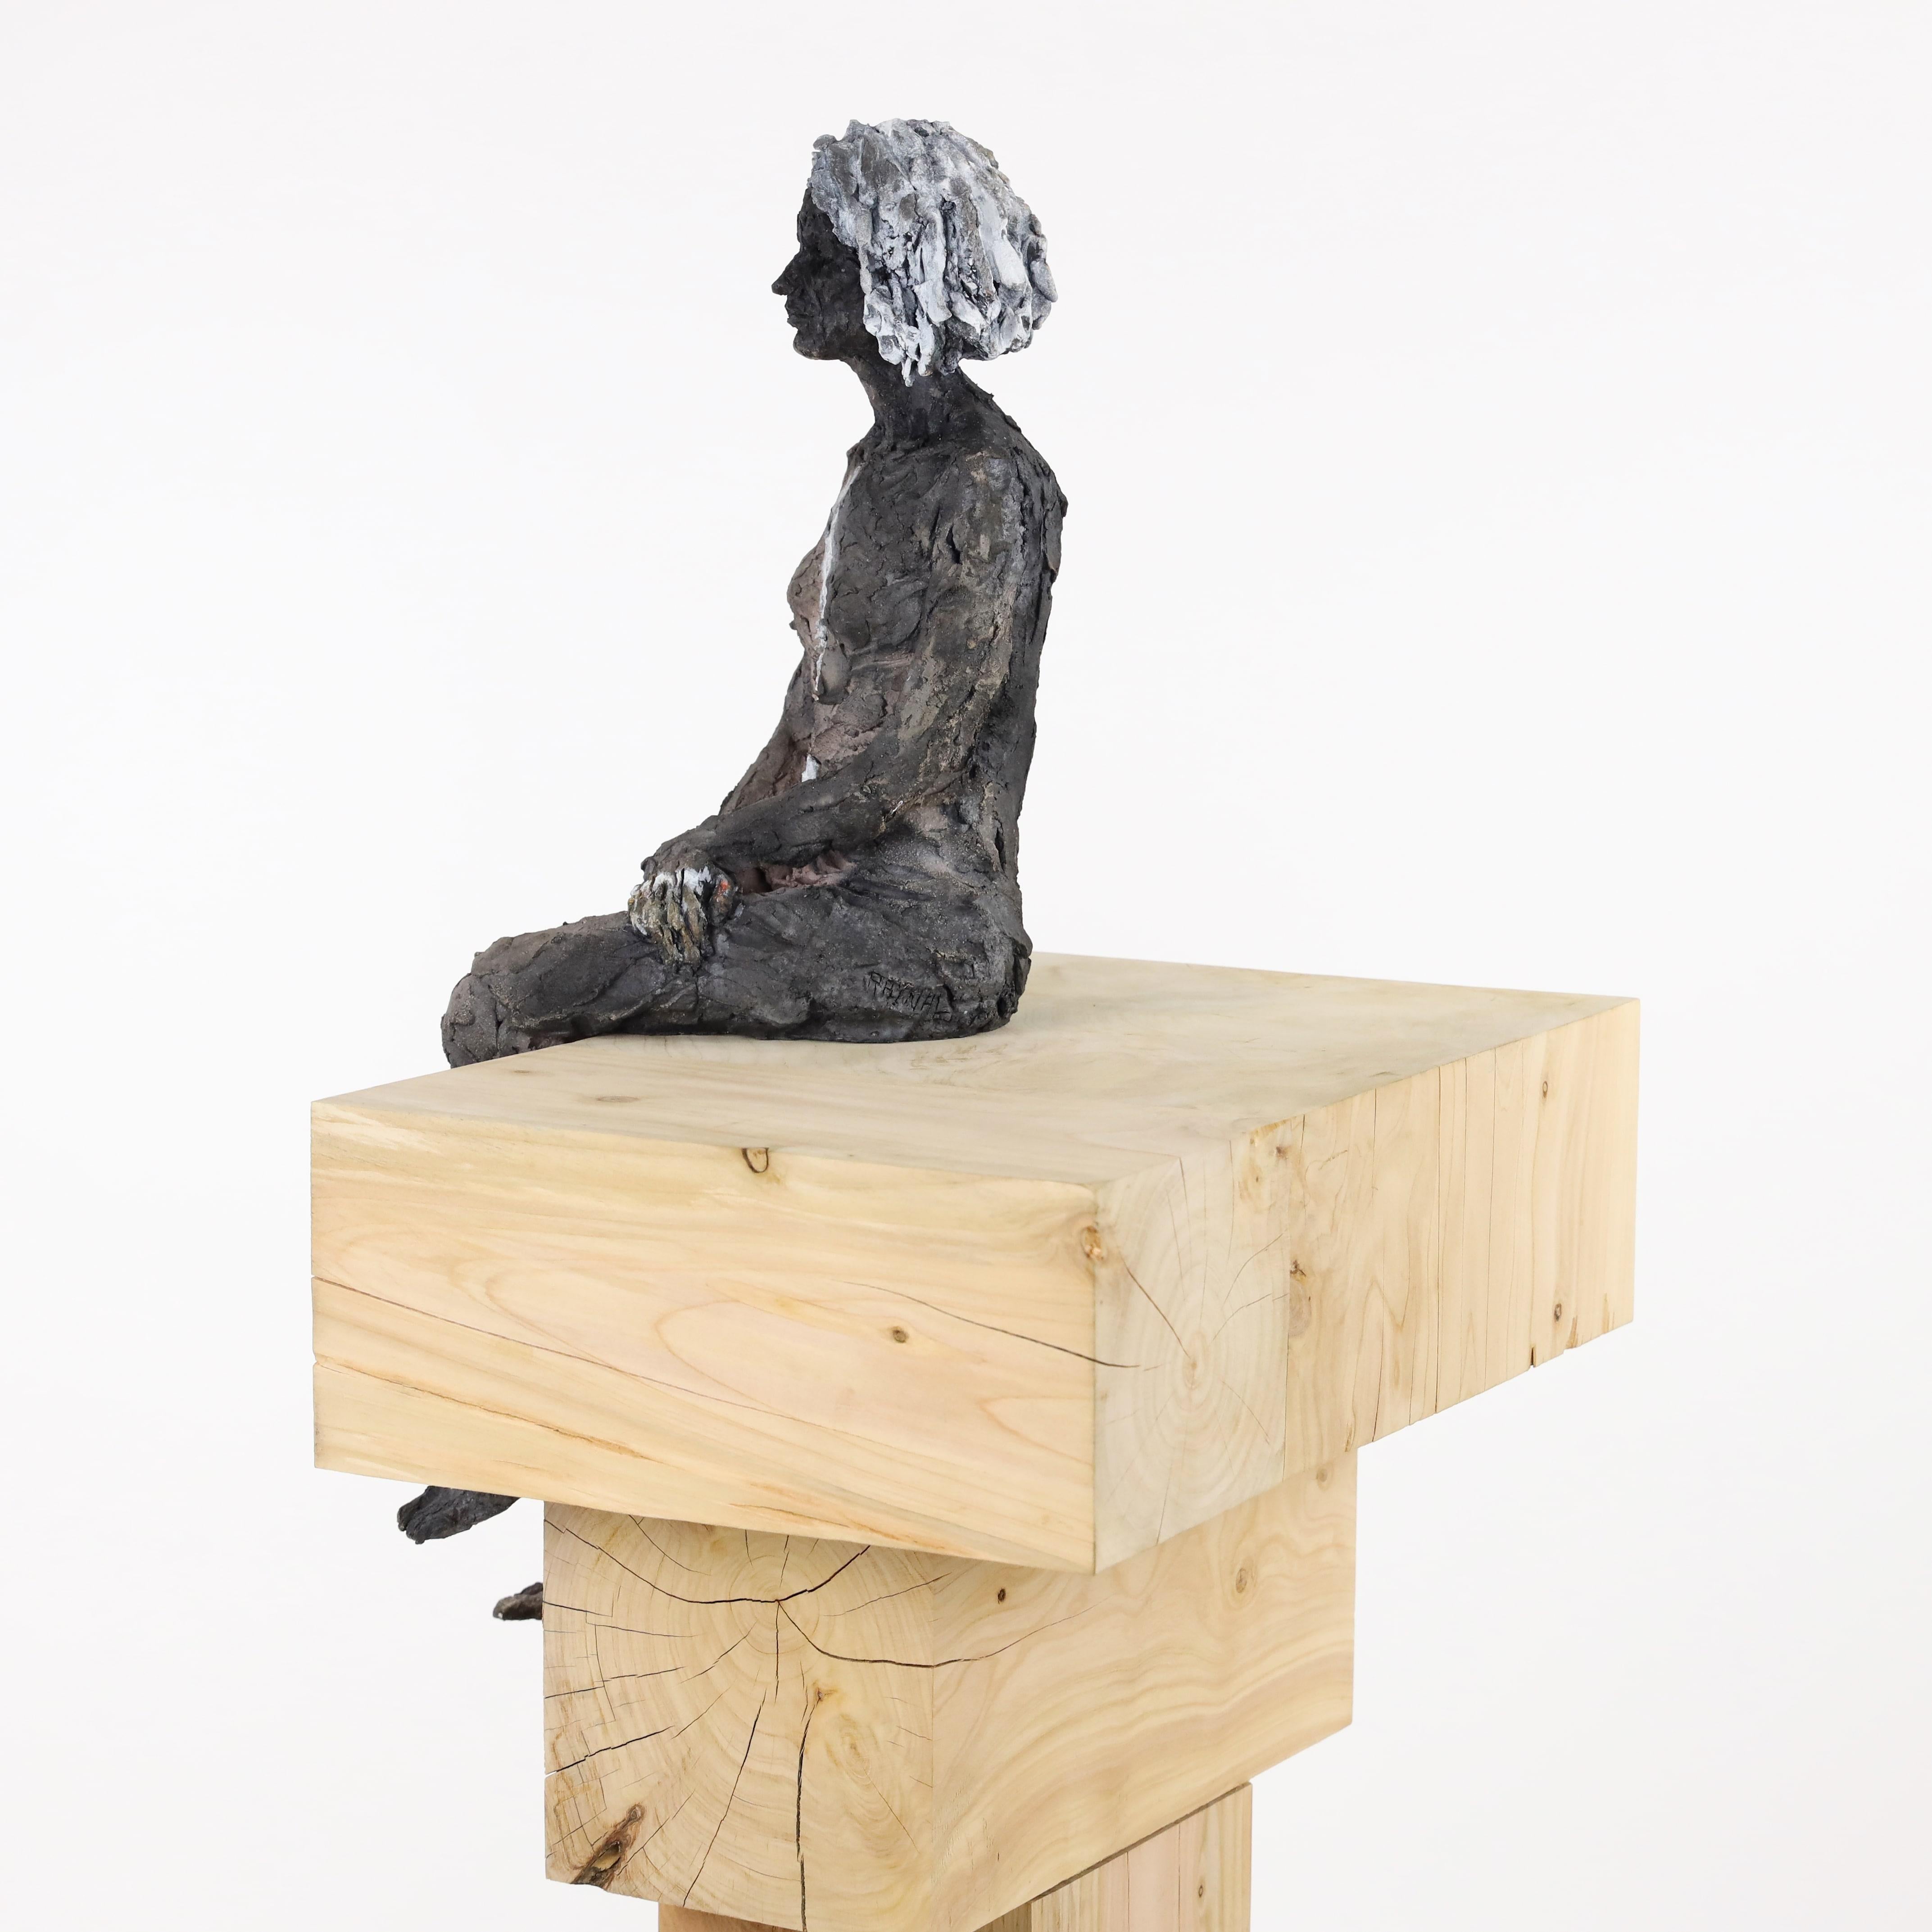 Die Akte – weibliches Porträt, Keramikskulptur (Braun), Figurative Sculpture, von Cécile Raynal